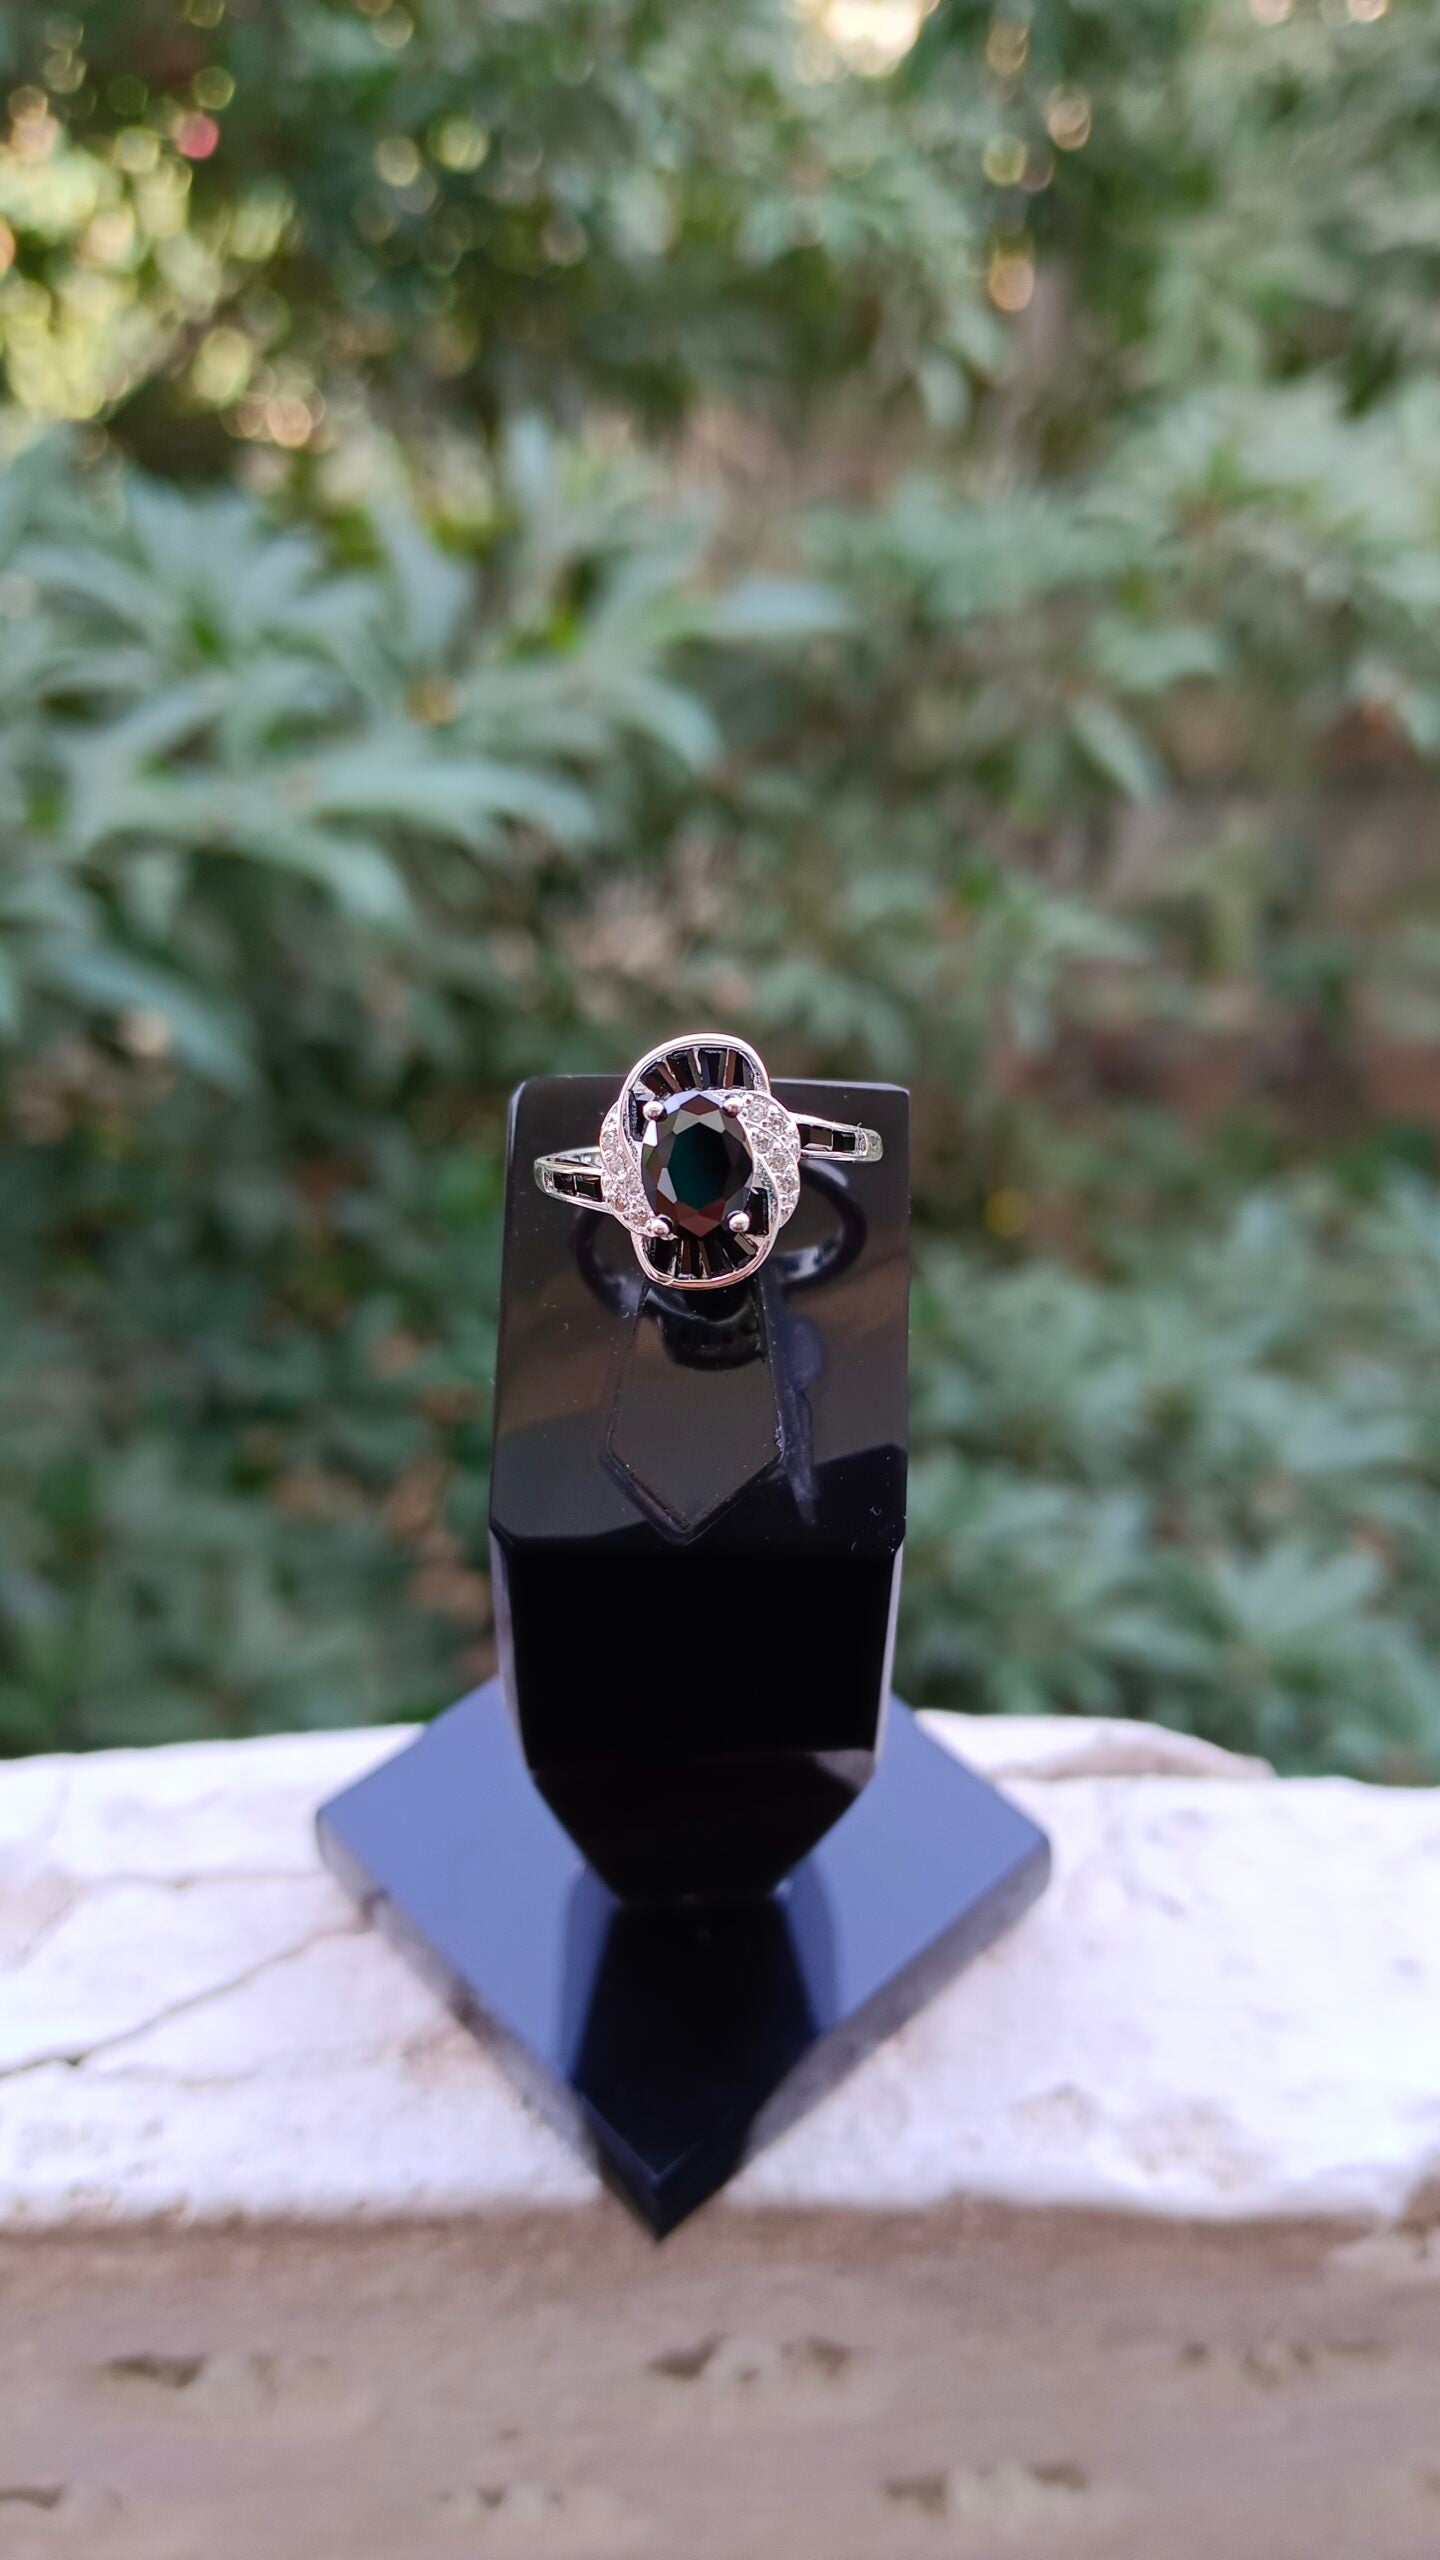 Black Zircon Ladies Ring